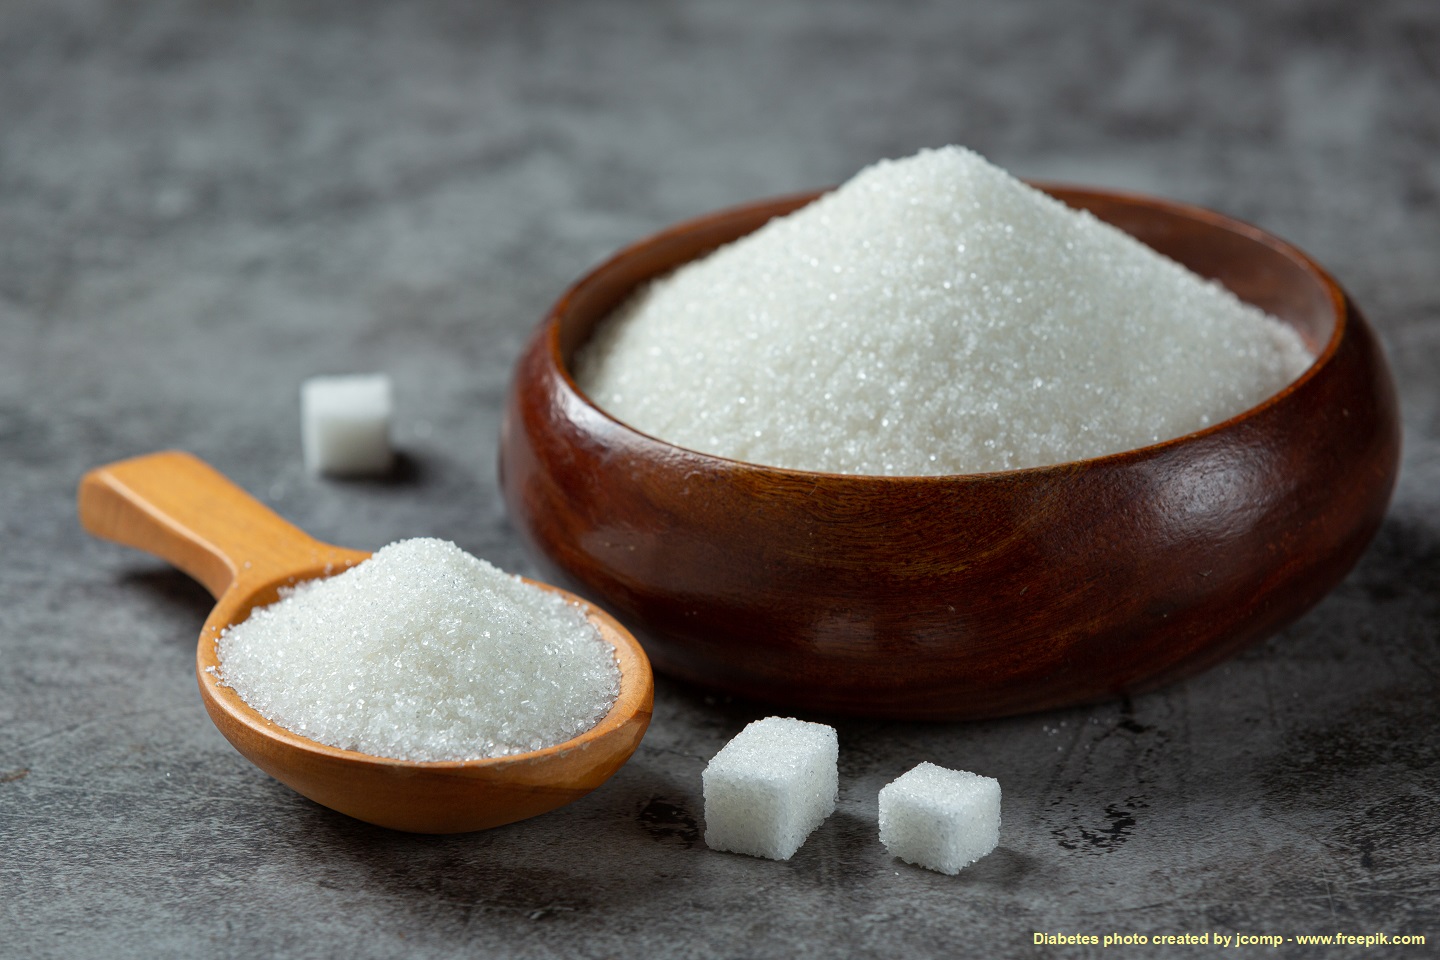 อินเดียจ่อห้ามส่งออกน้ำตาลทราย พาณิชย์หวั่นราคาตลาดโลกพุ่ง 